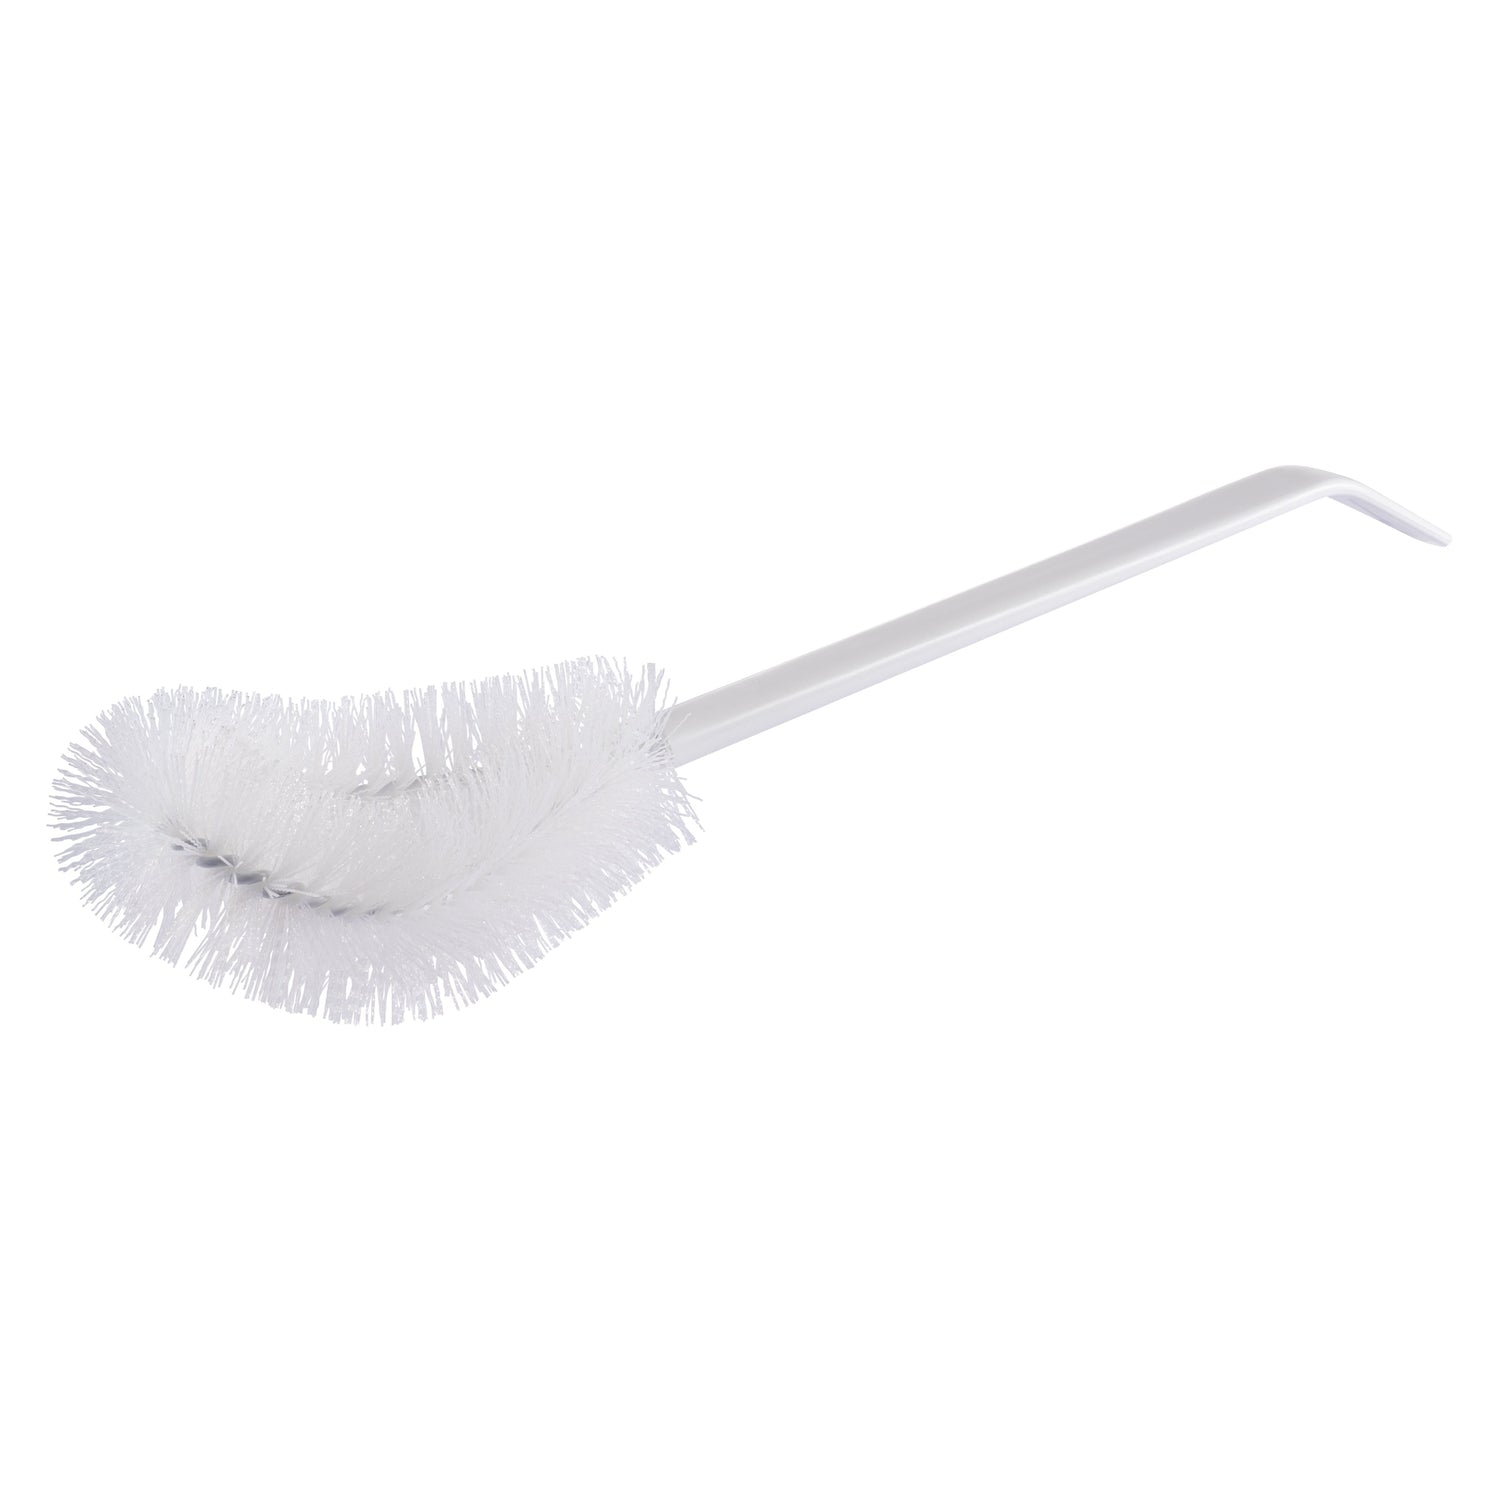 Cepillo de Tazón con punta de punta - Duradero y con cerdas rígidas, con manija de alta resistencia, cepillos de limpieza - Fuller Brush Company